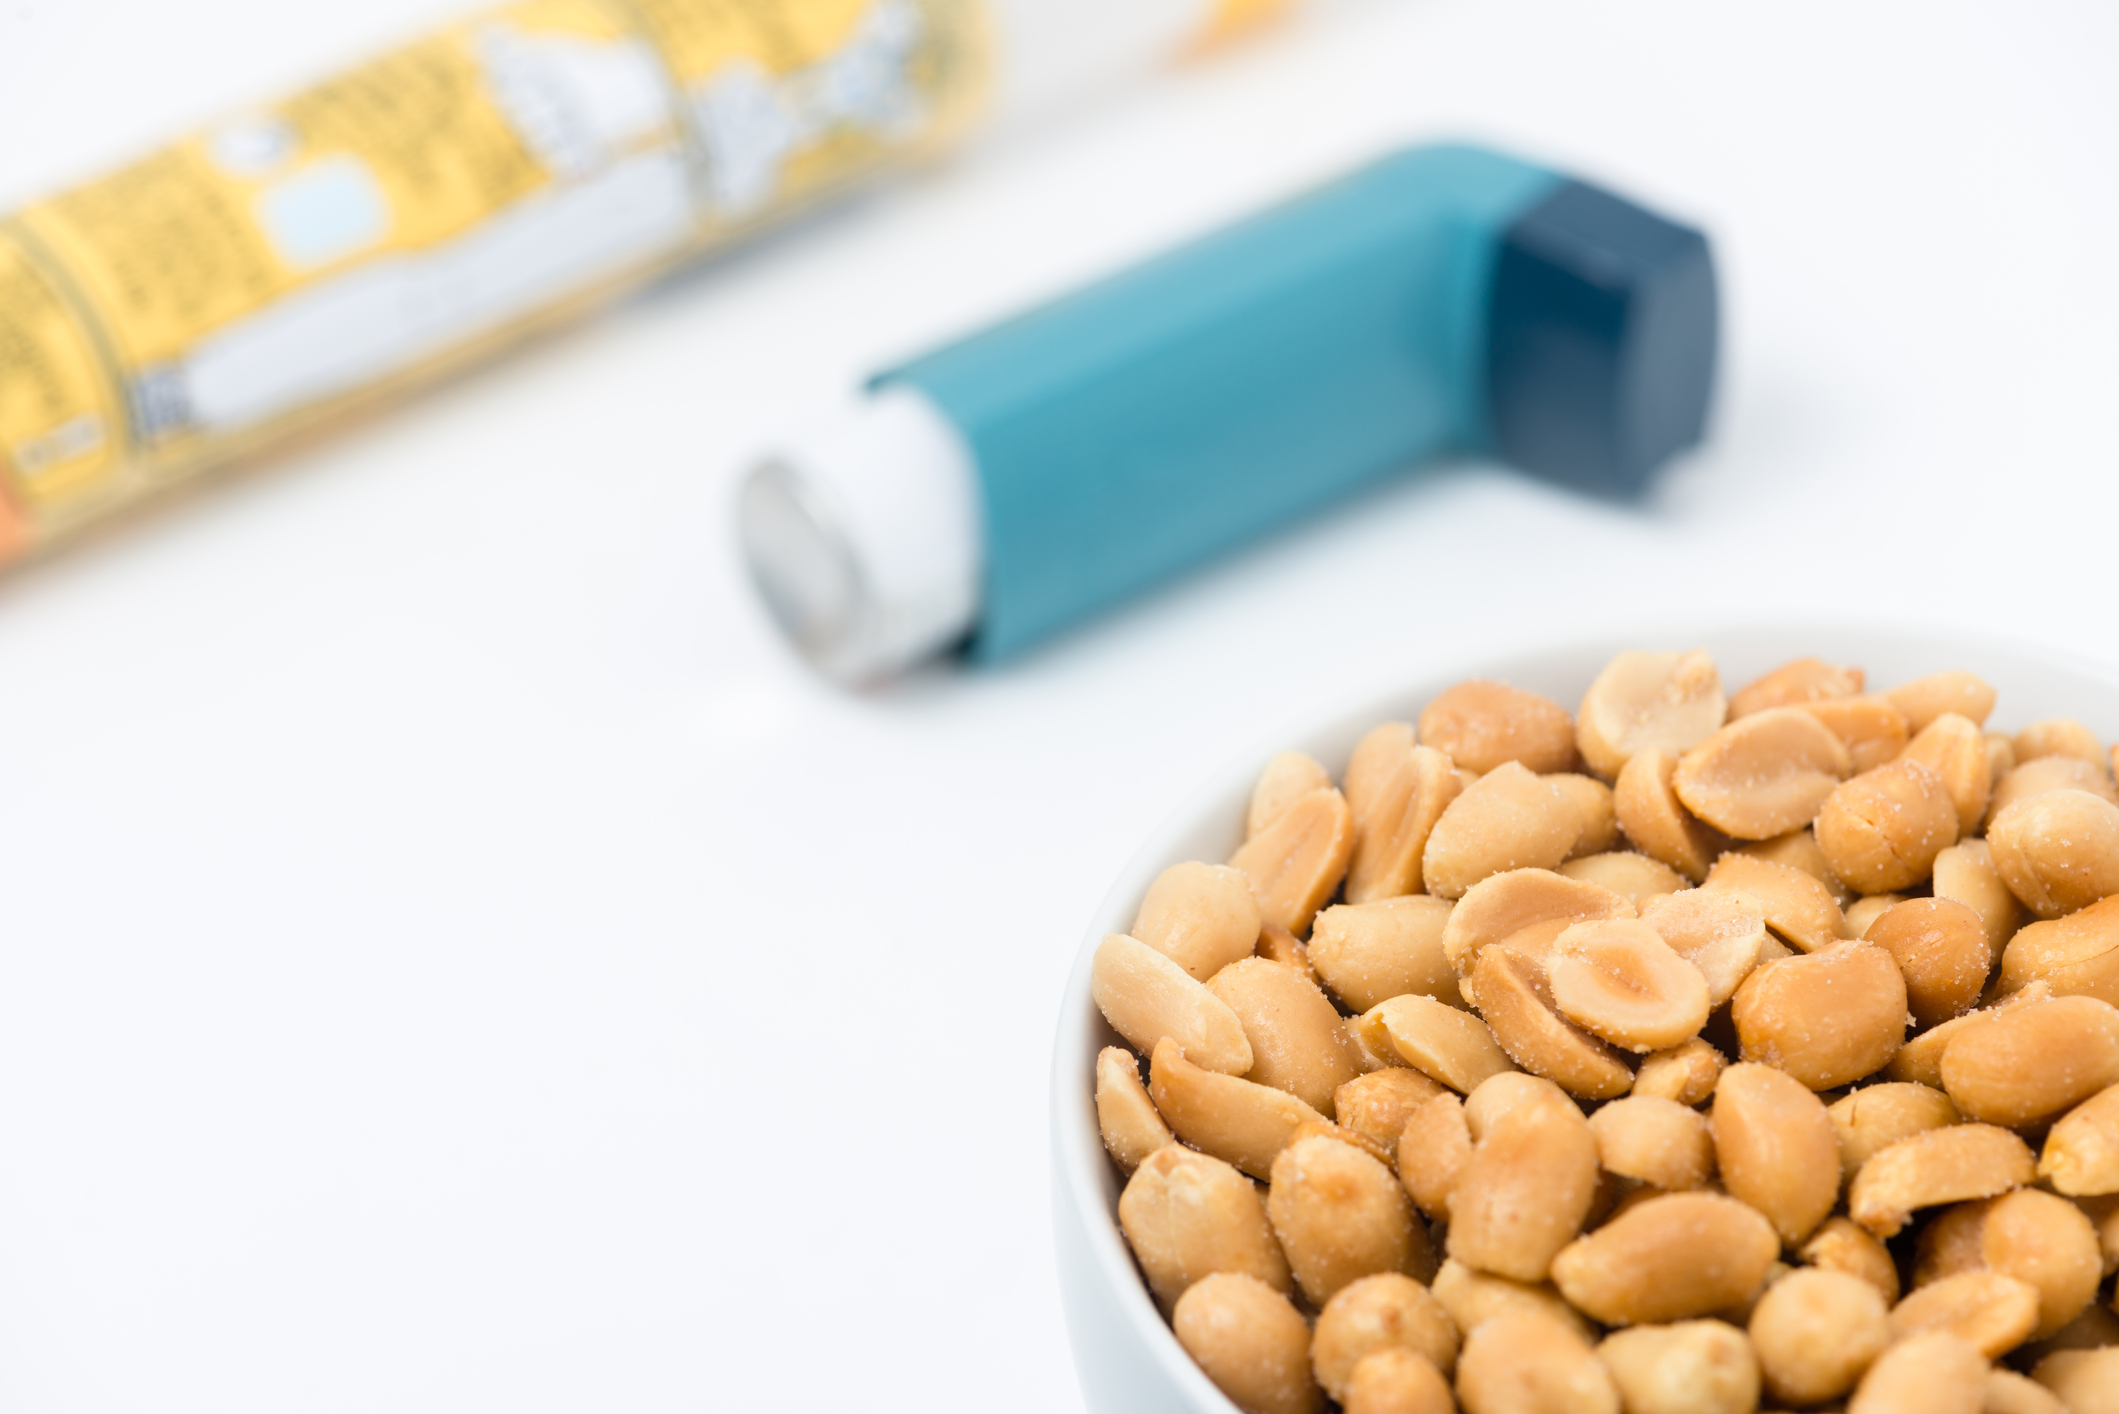 Le médicament contre l’asthme Xolair peut réduire considérablement les allergies alimentaires